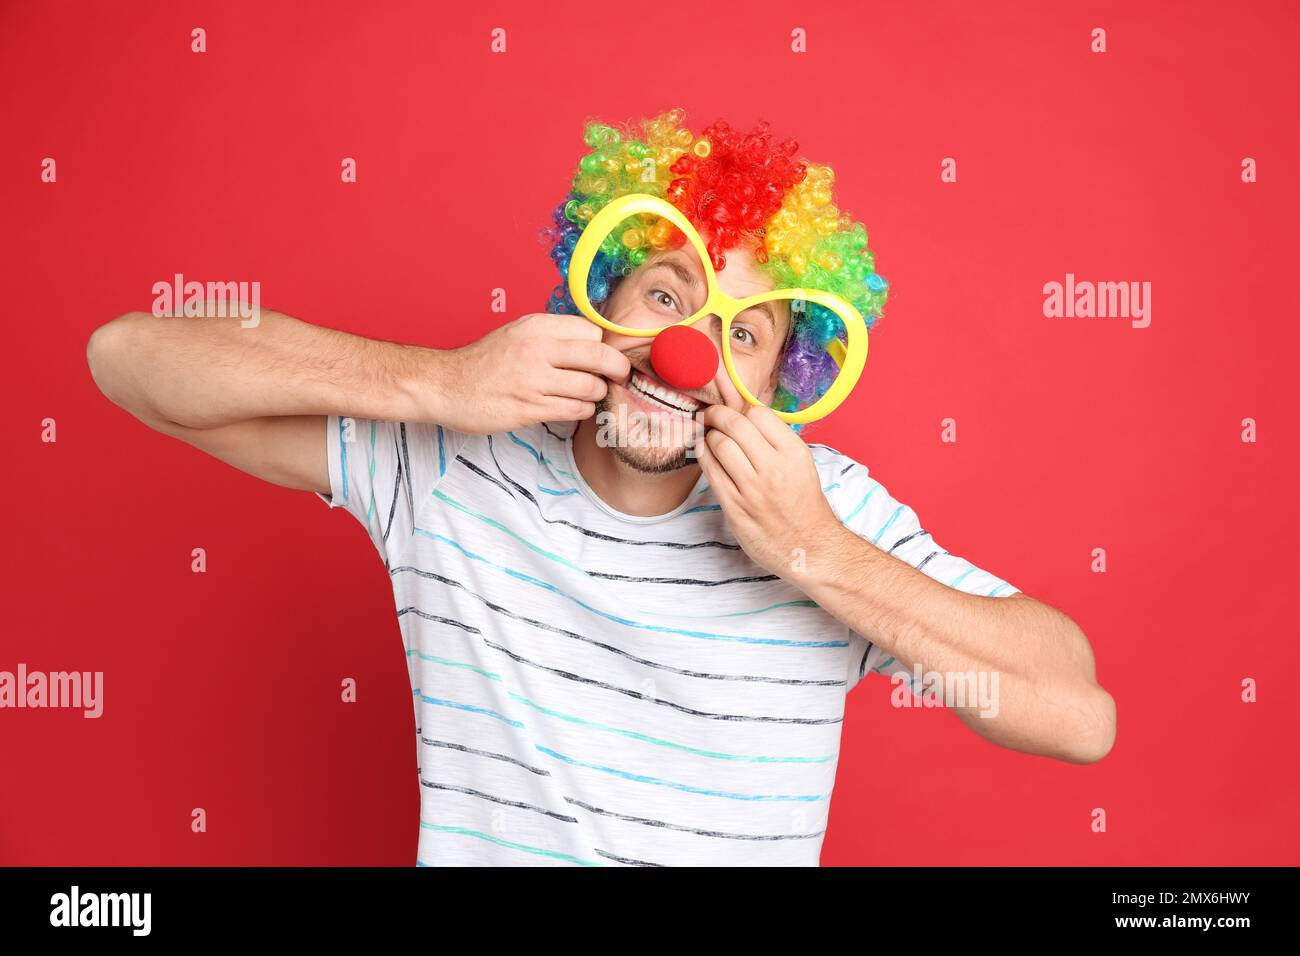 Lustiger Mann mit großer Brille, Regenbogenperücke und Clownnnase auf rotem Hintergrund. Der Aprilscherztag Stockfoto